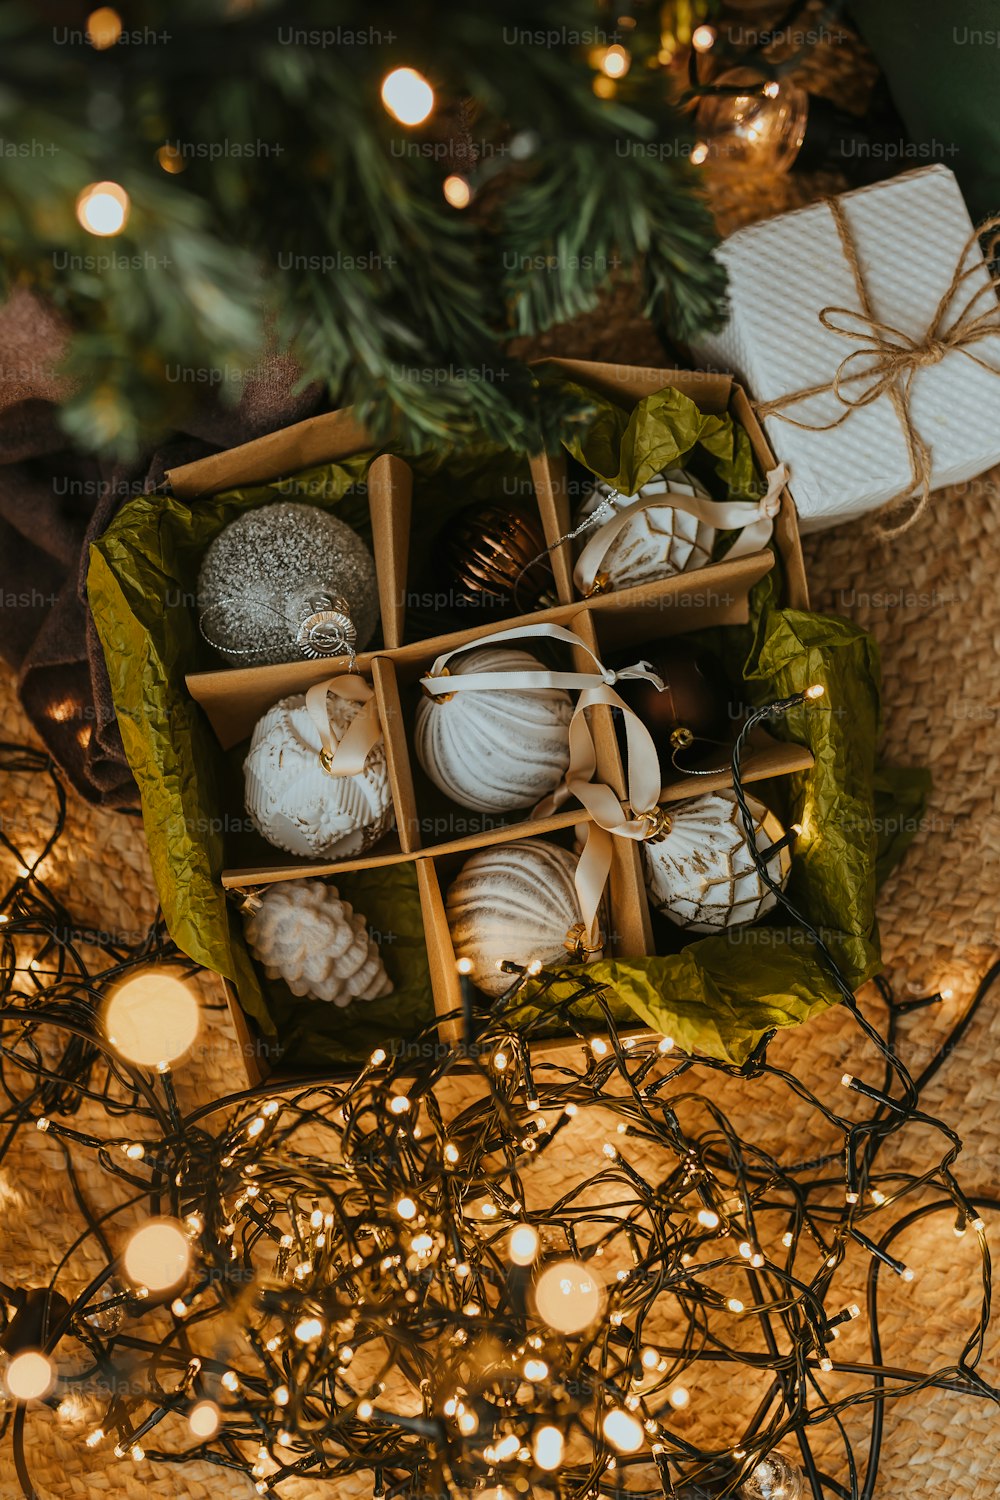 Una caja llena de adornos navideños junto a un árbol de Navidad